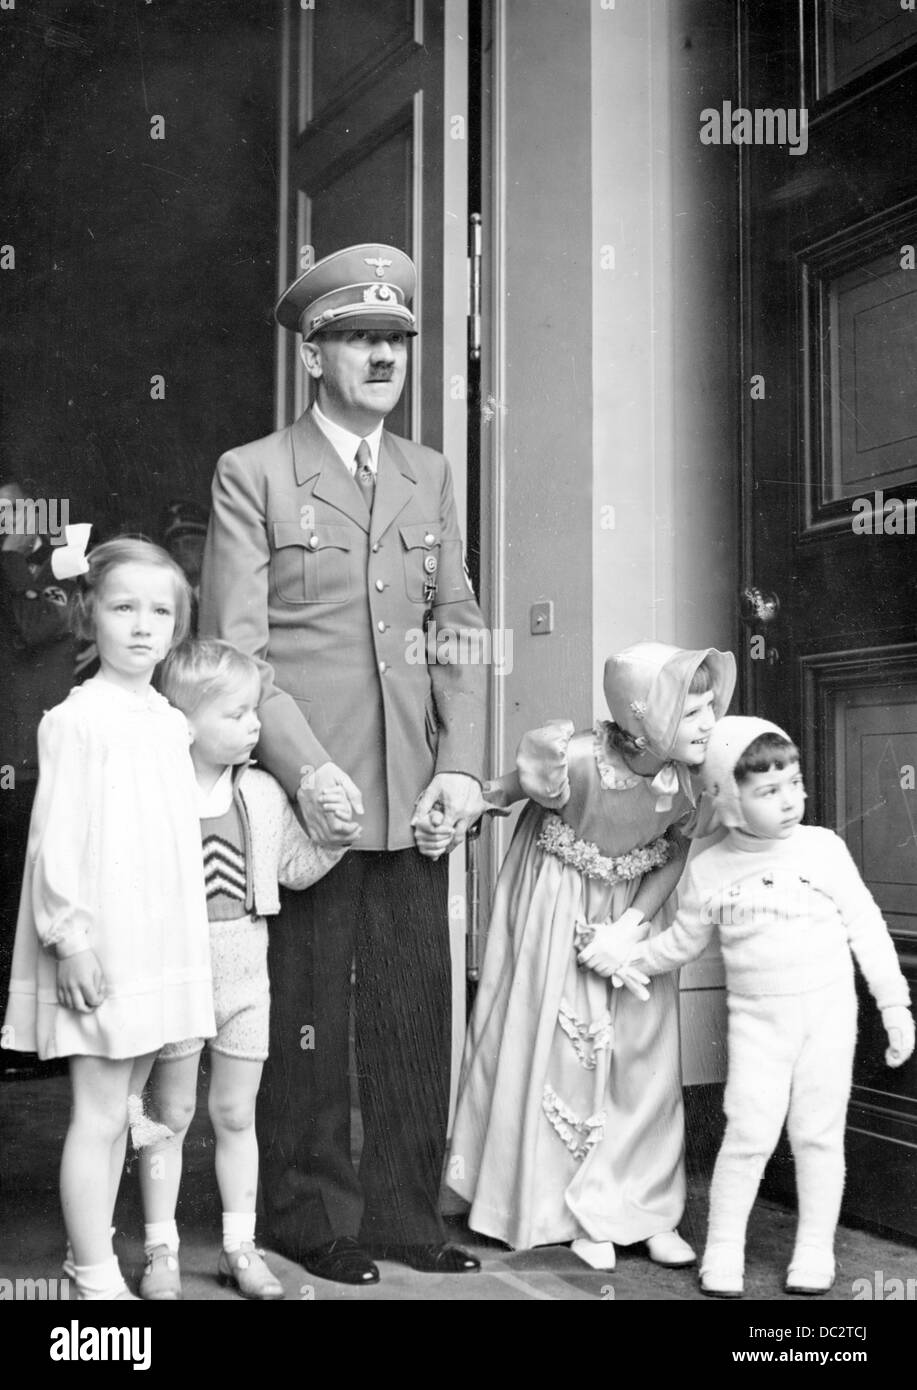 La propagande nazie! L'image montre Adolf Hitler à l'occasion de son anniversaire de 50th avec des enfants, qui l'ont félicité, à l'entrée de la Chancellerie Neue Reich à Berlin, en Allemagne, le 20 avril 1939. Fotoarchiv für Zeitgeschichte Banque D'Images